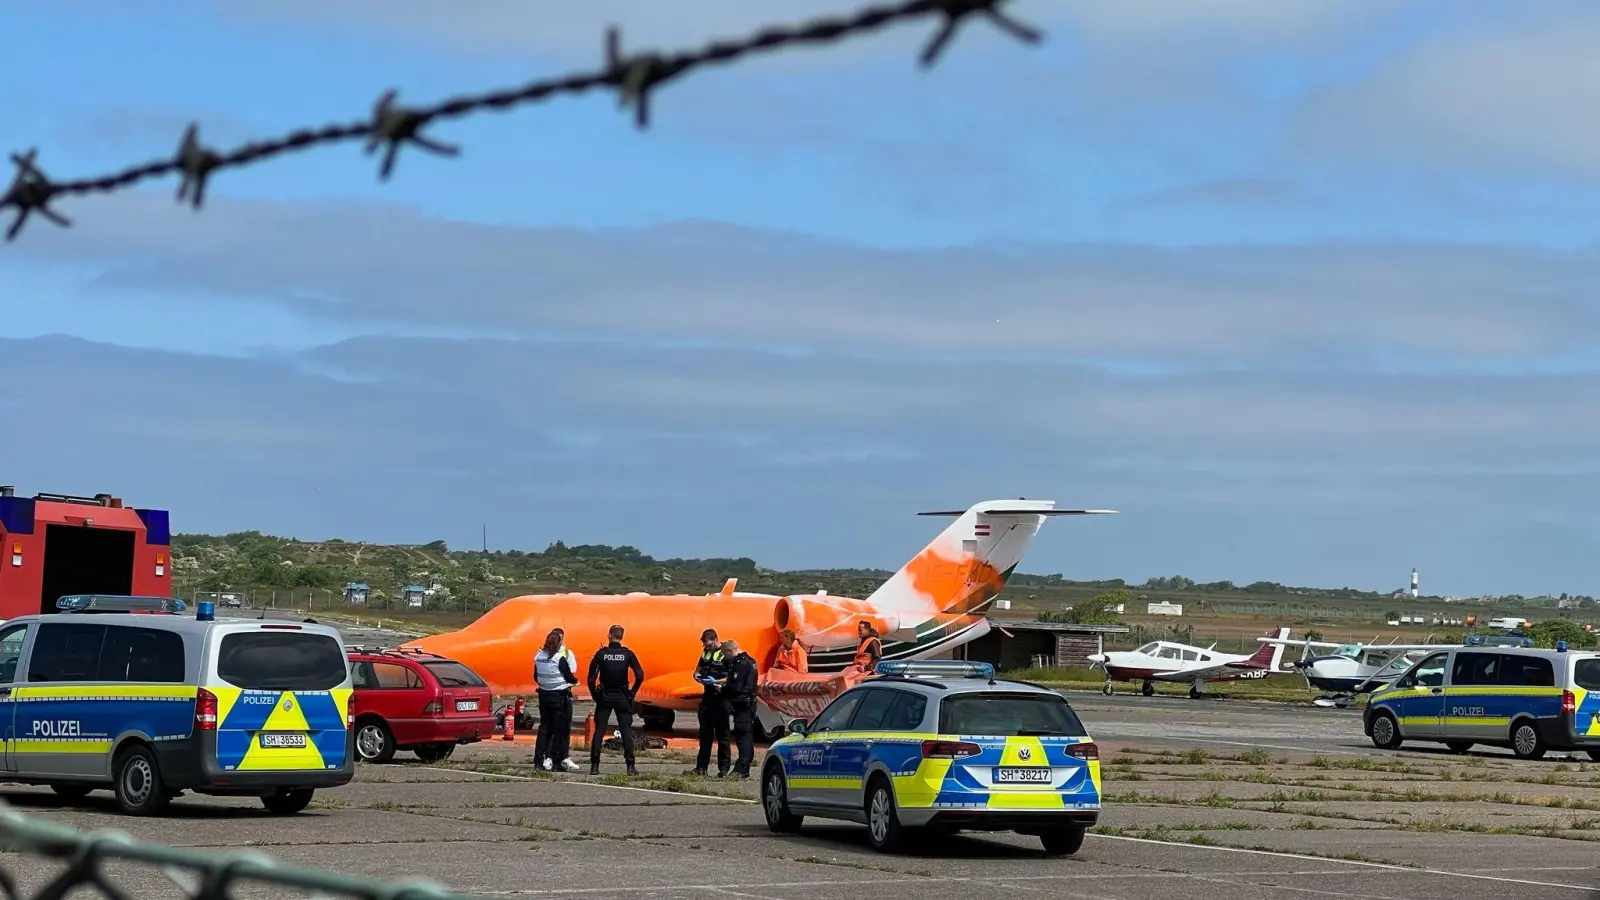 Klimaschutz-Demonstranten der Initiative Letzte Generation haben einen Jet mit oranger Farbe besprüht. (Foto: Julius Schreiner/TNN/dpa)